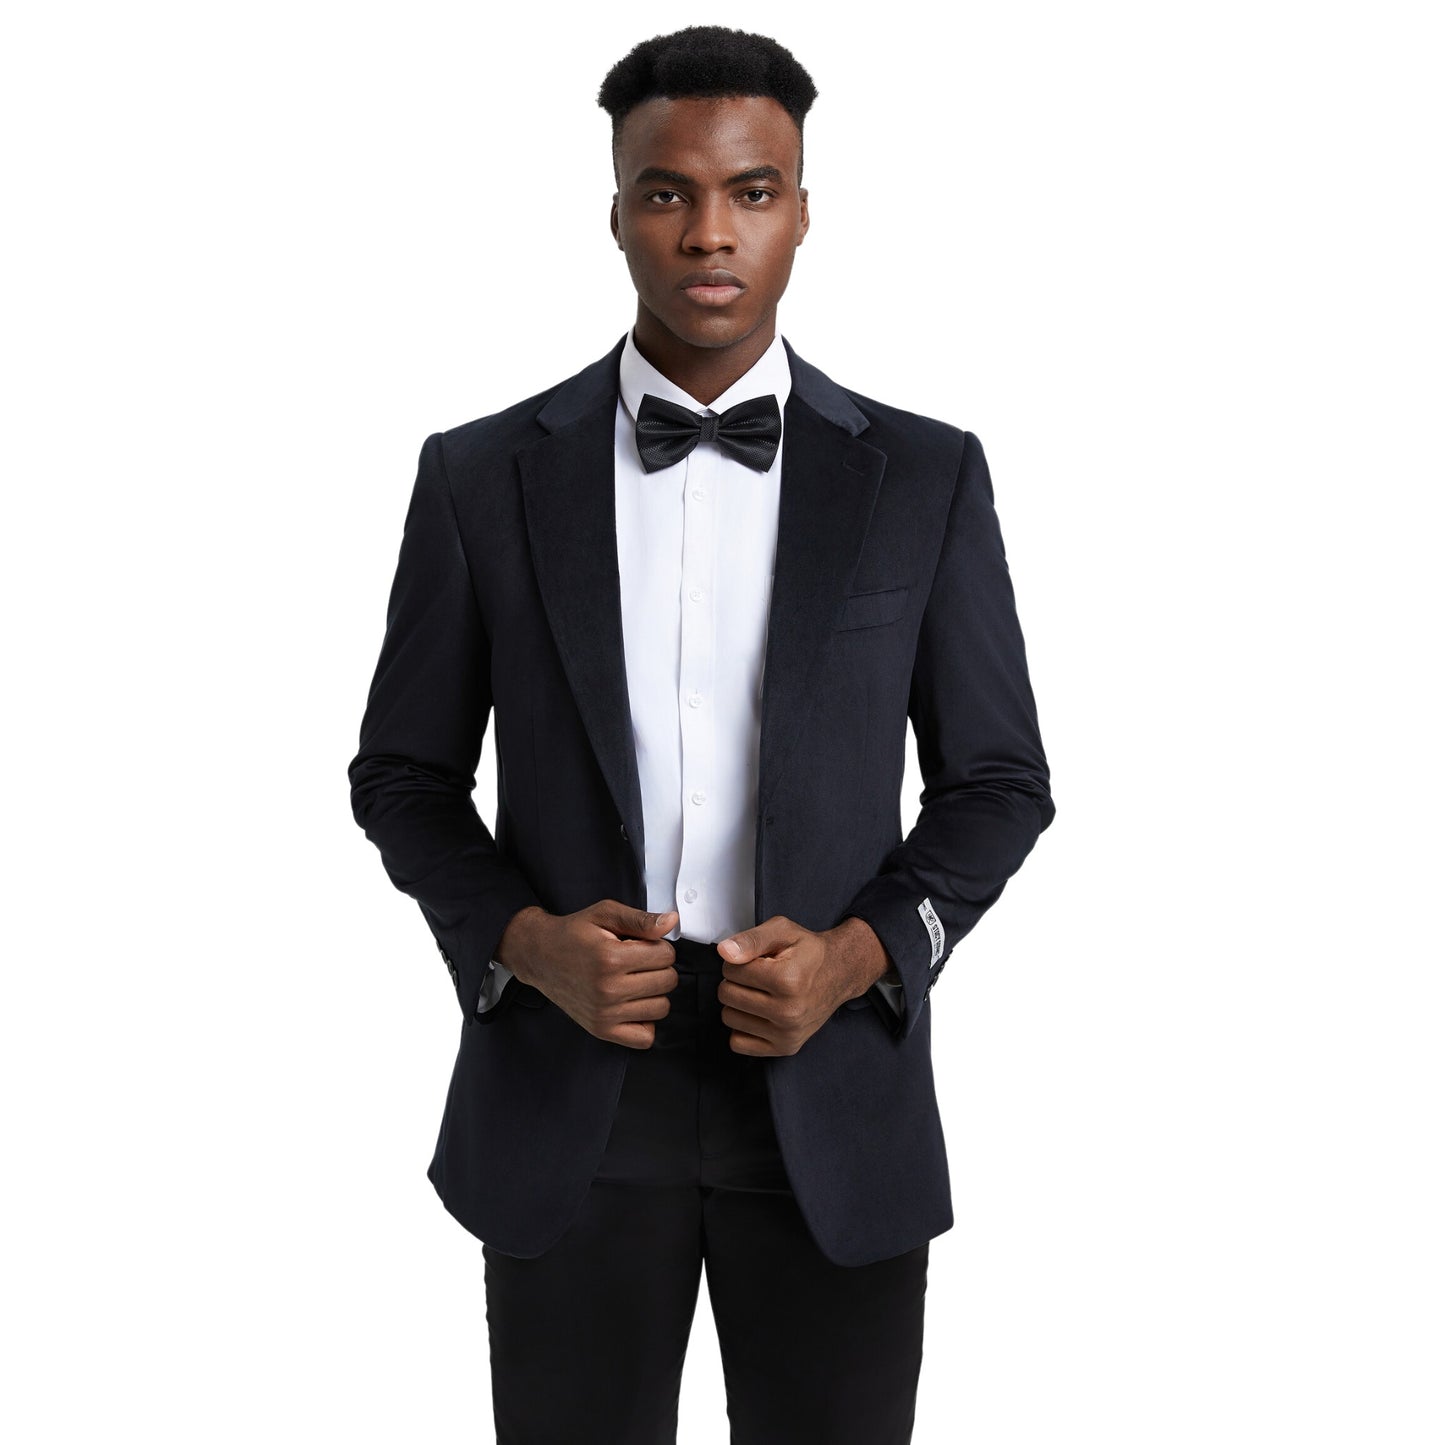 Elegant man in a classic black velvet blazer for formal events.